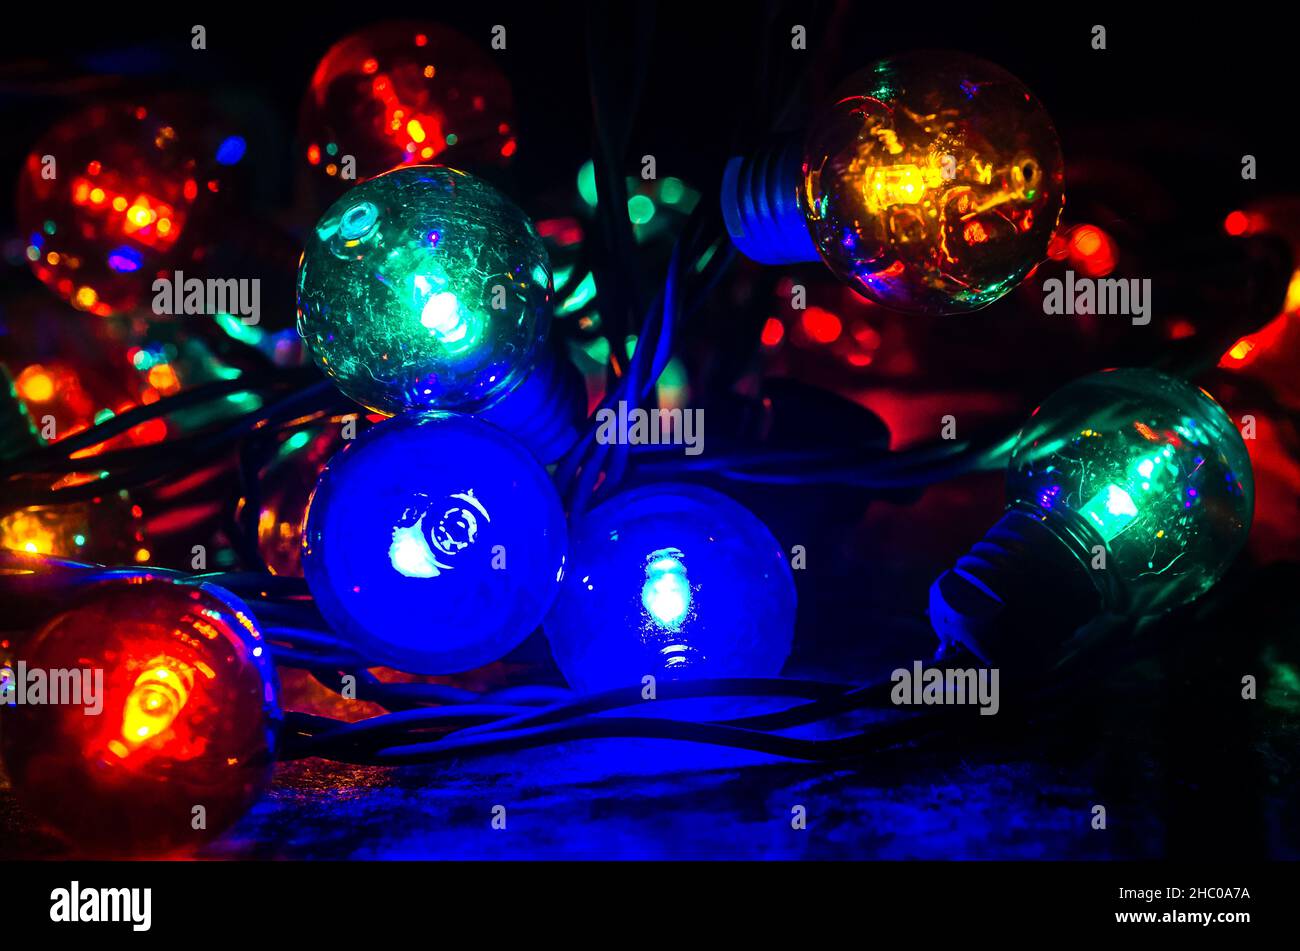 Farbige Globenlichter lagen am 27. Dezember 2017 in CODEN, Alabama, auf einem Tisch. Globe-Style-Leuchten können innen oder außen für einen festlichen Touch verwendet werden. Stockfoto